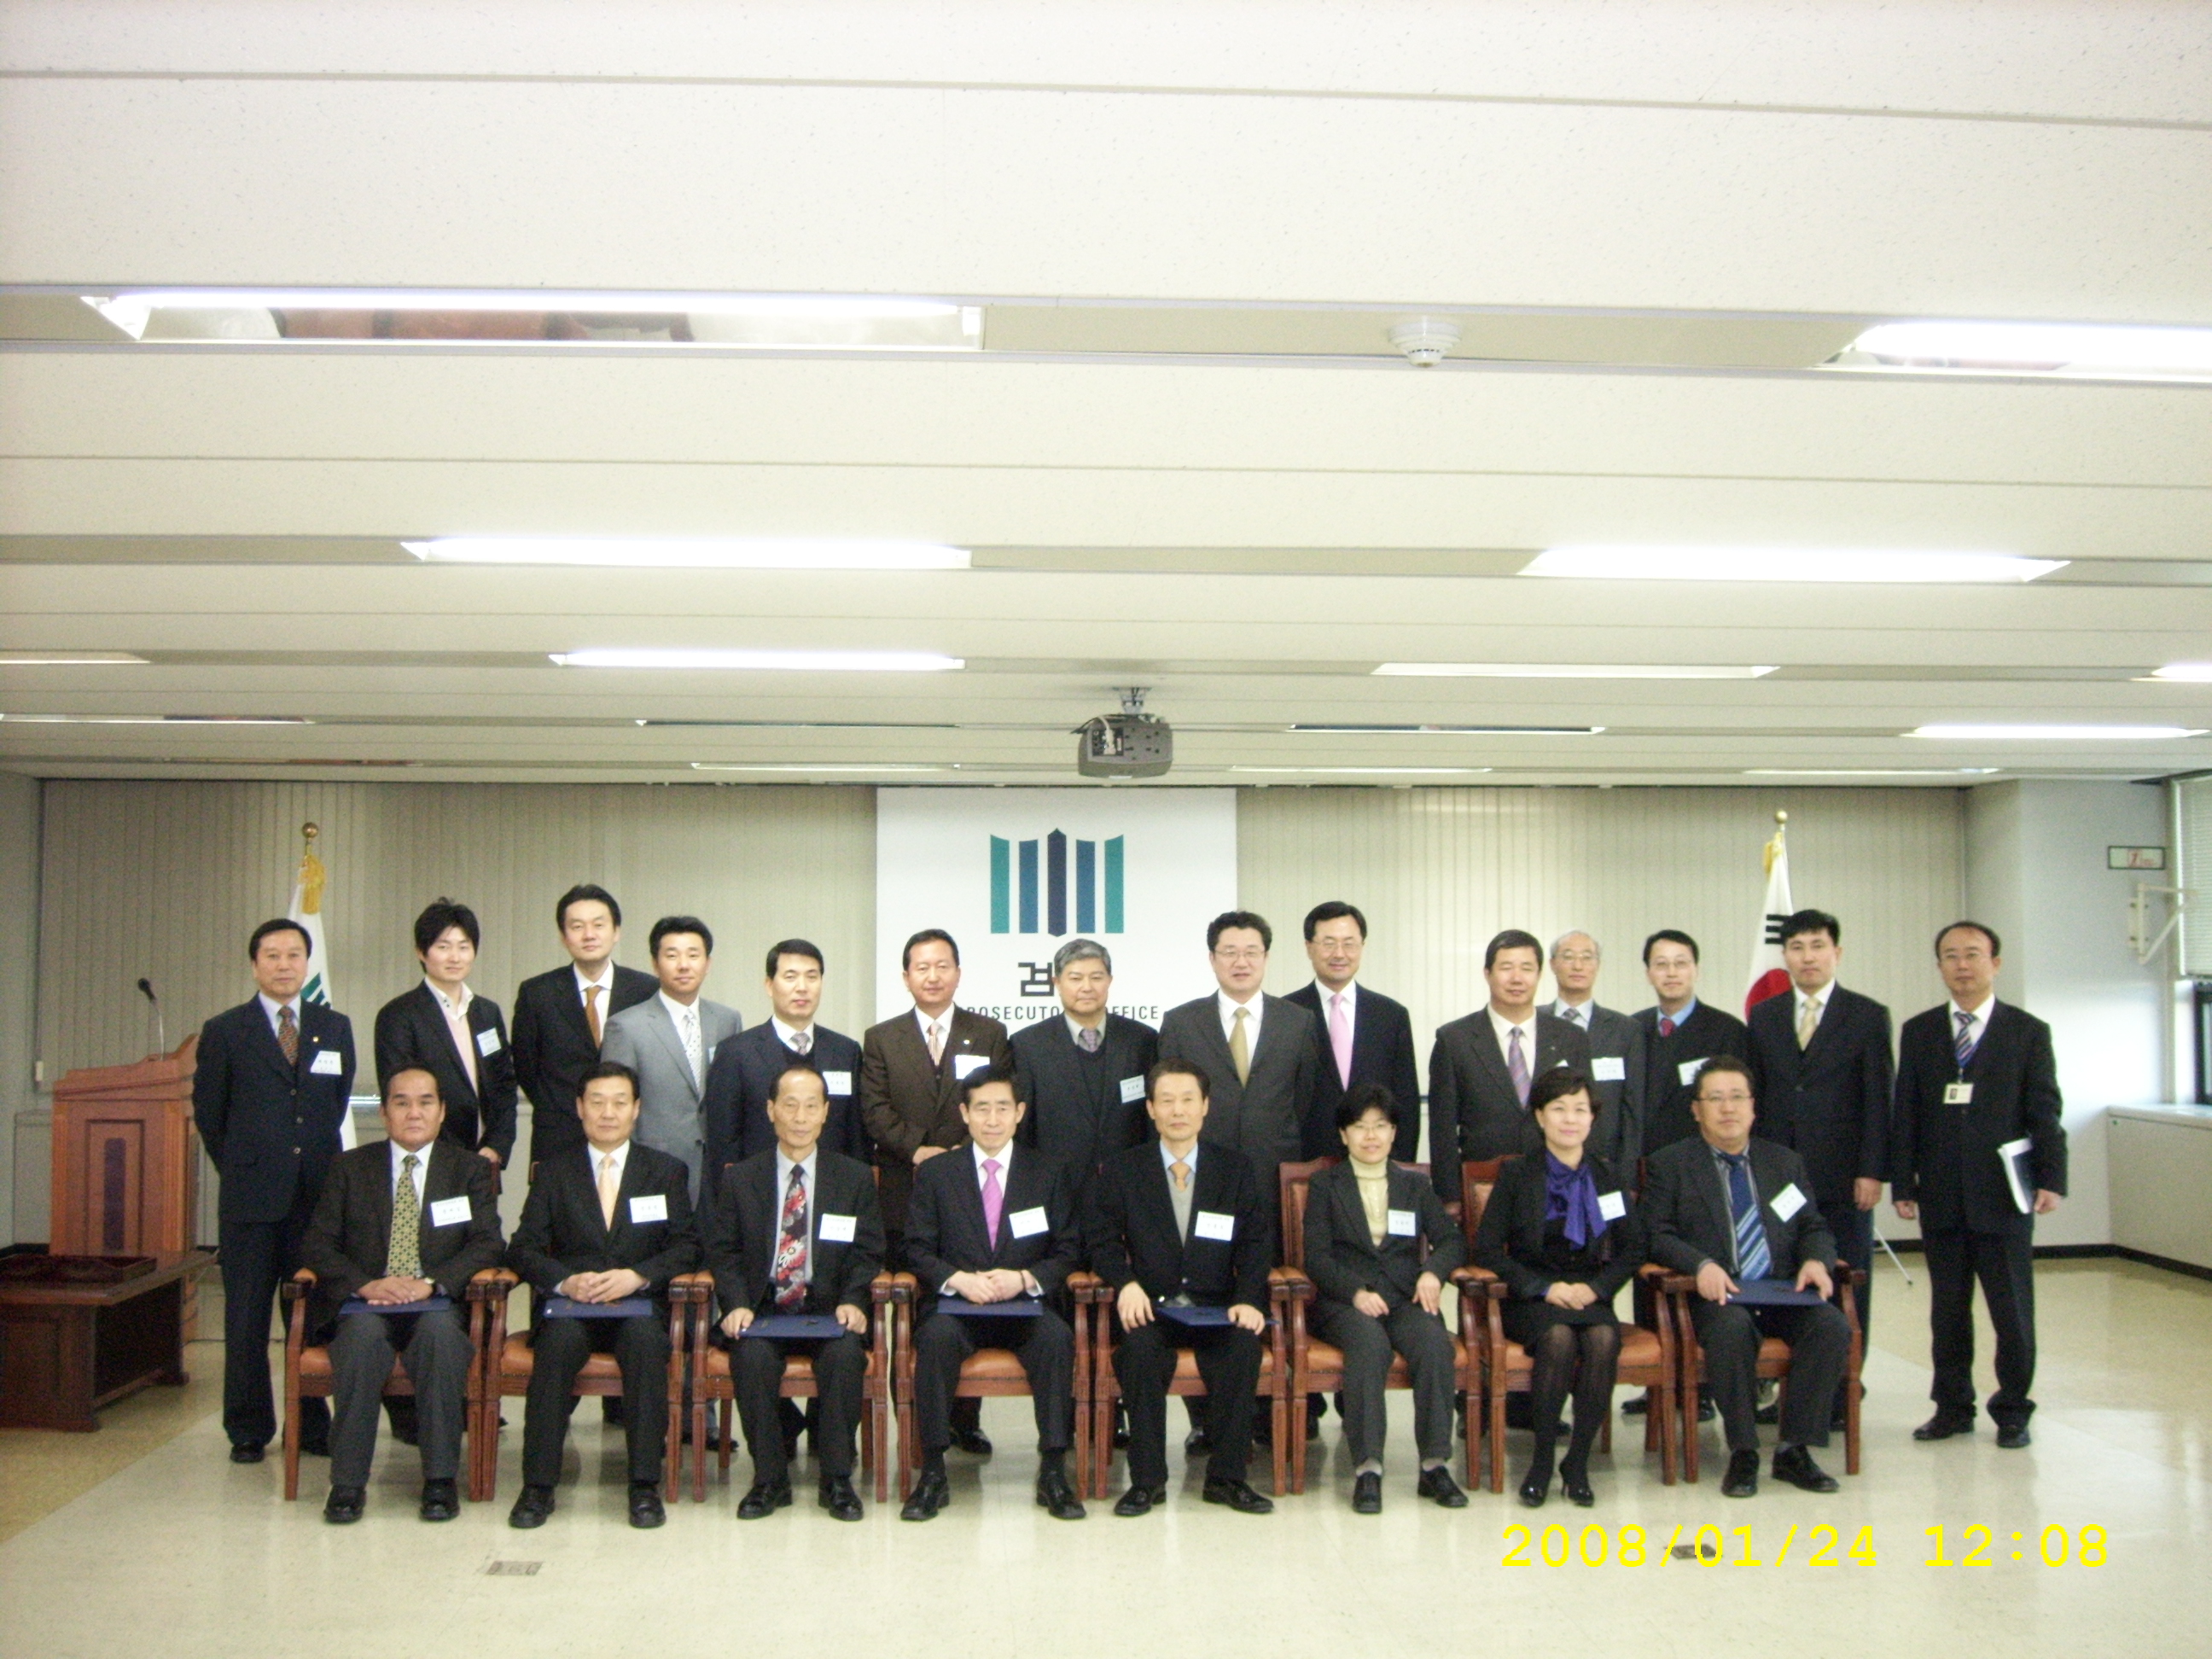 신규 형사조정위원 위촉식 (2008.1.24).jpg